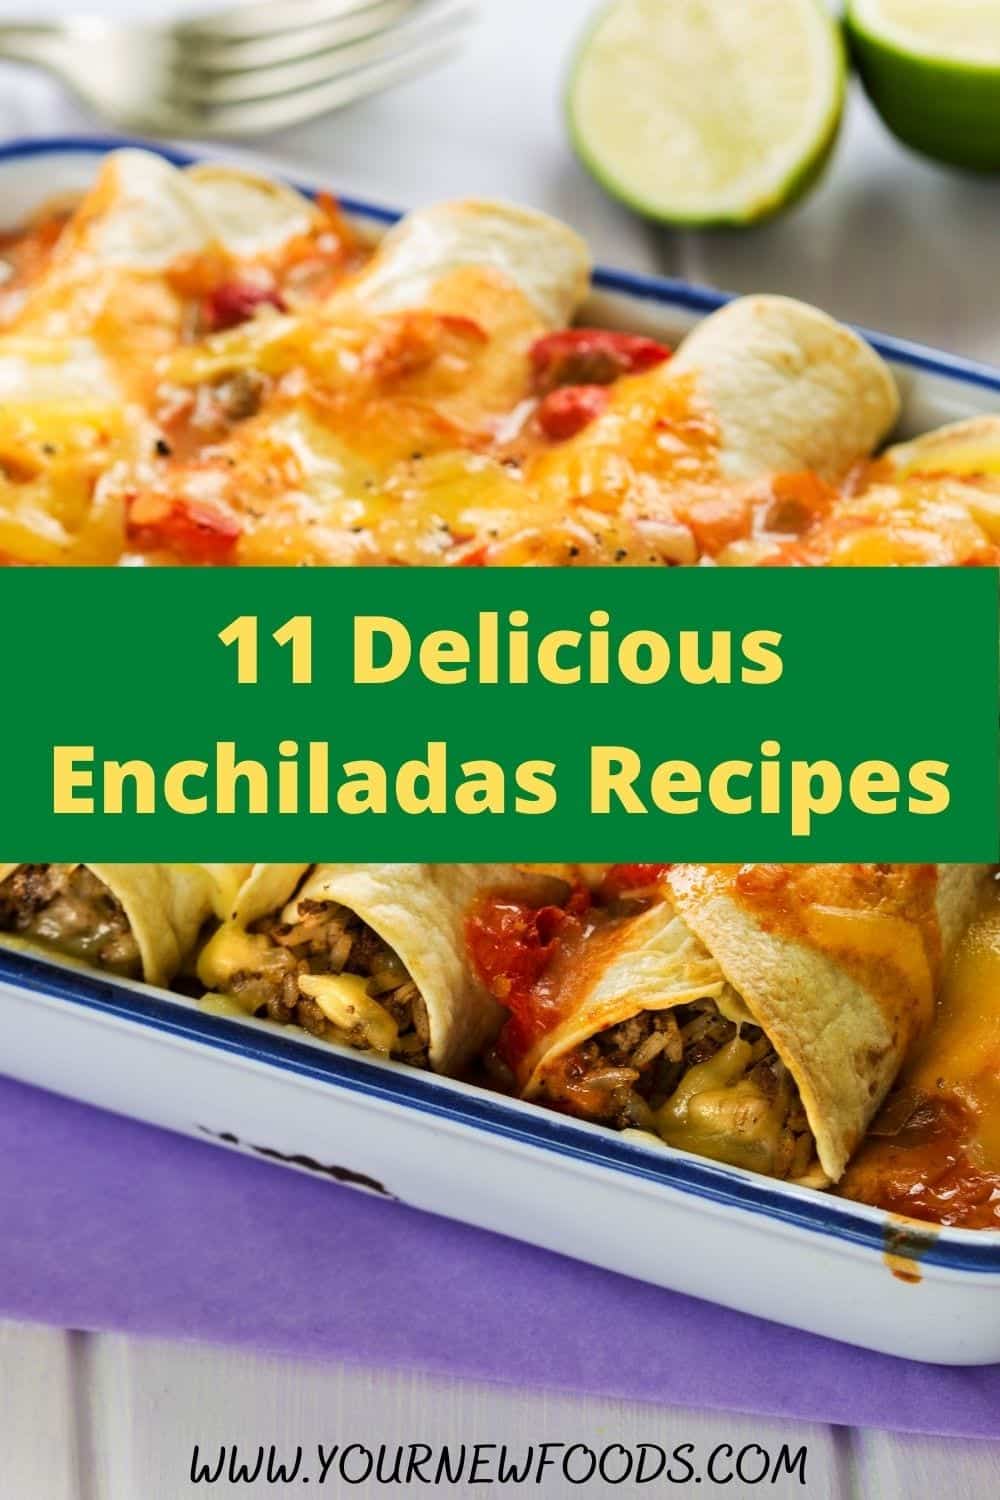 Recipe For Mexican Enchiladas